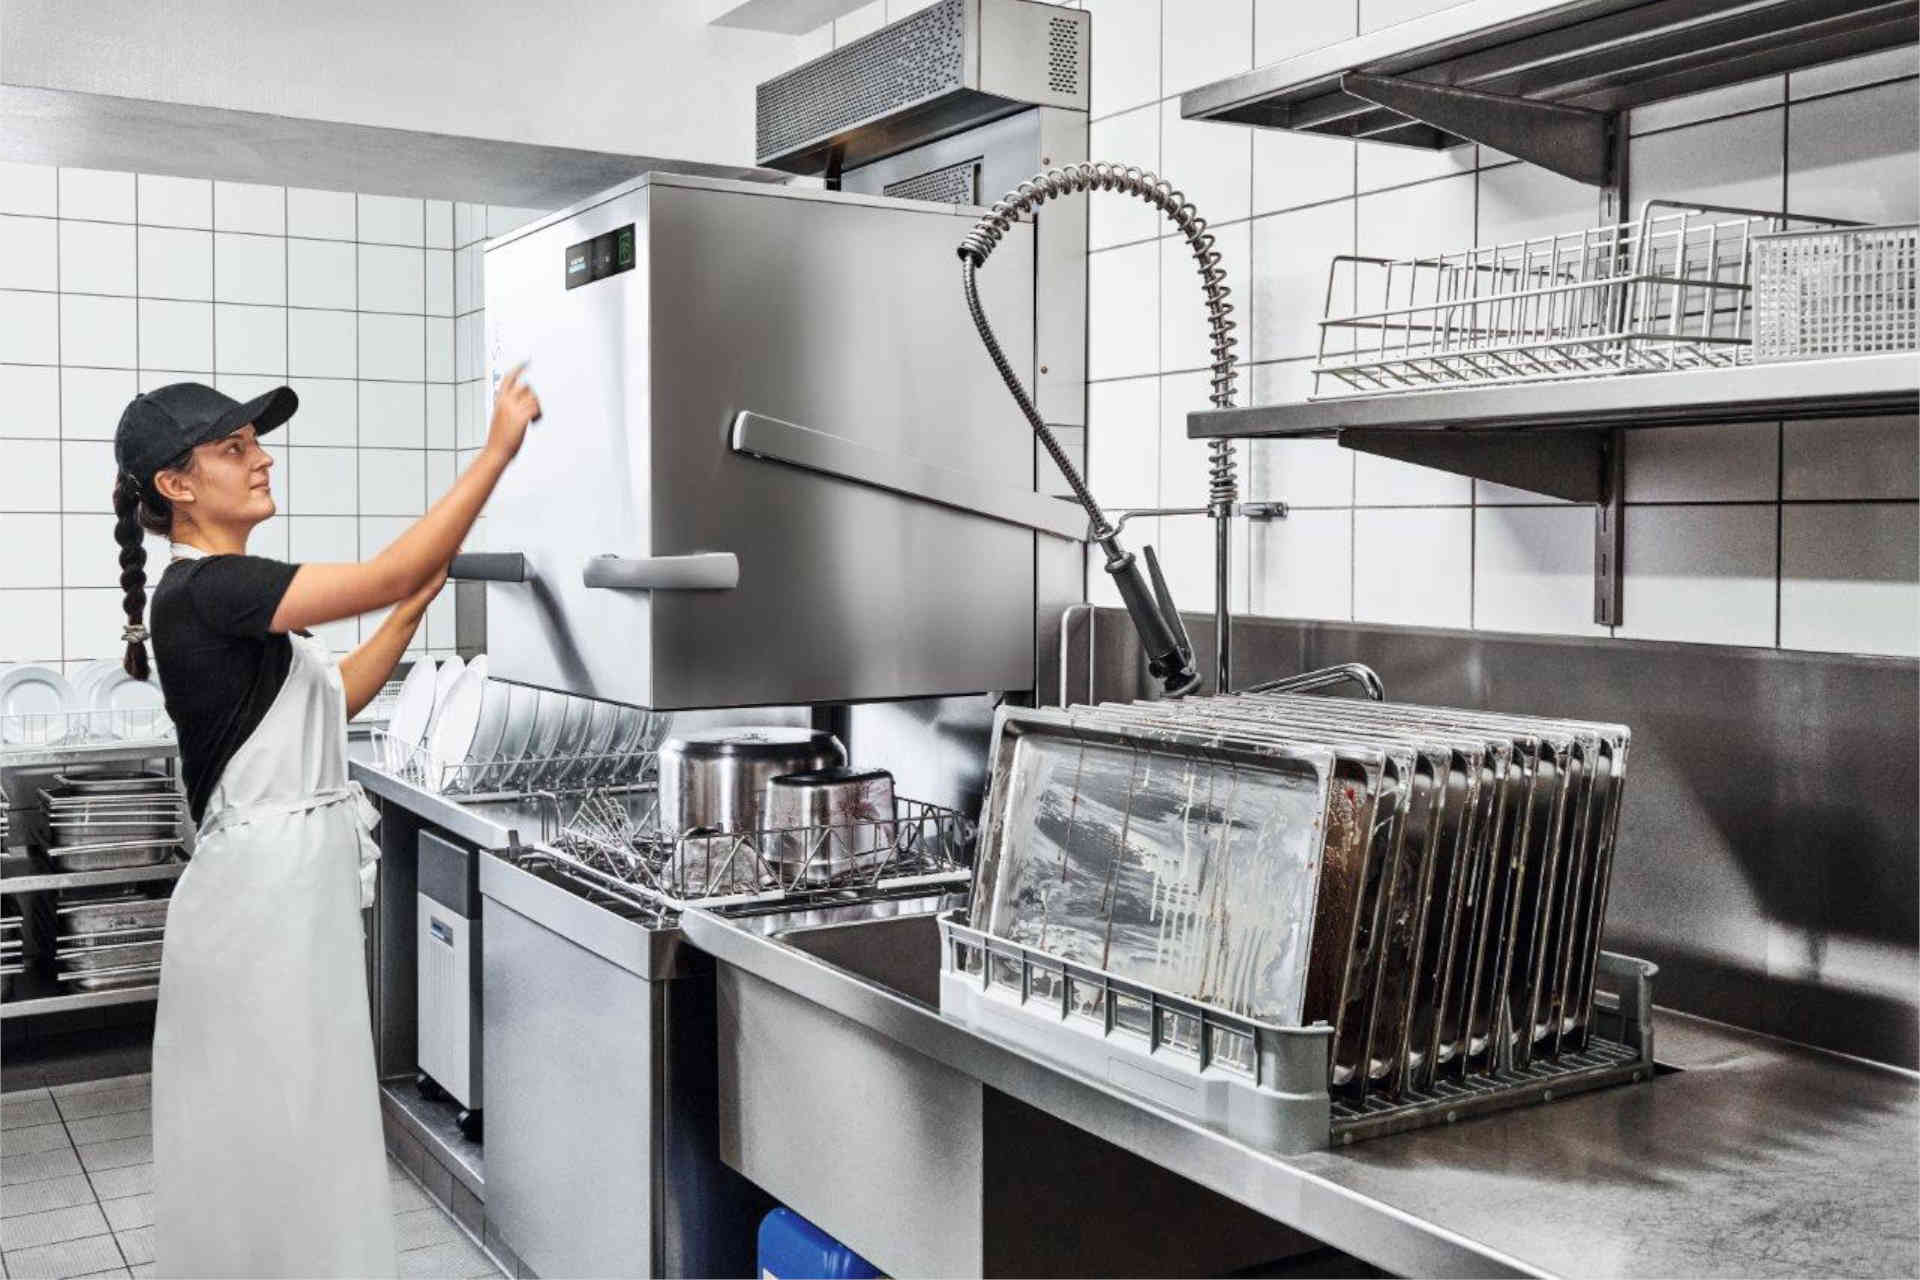 Die PT Utensil bietet ein leistungsstarkes Spülsystem mit der einfachen Bedienung einer Haubenspülmaschine. © Winterhalter Gastronom GmbH